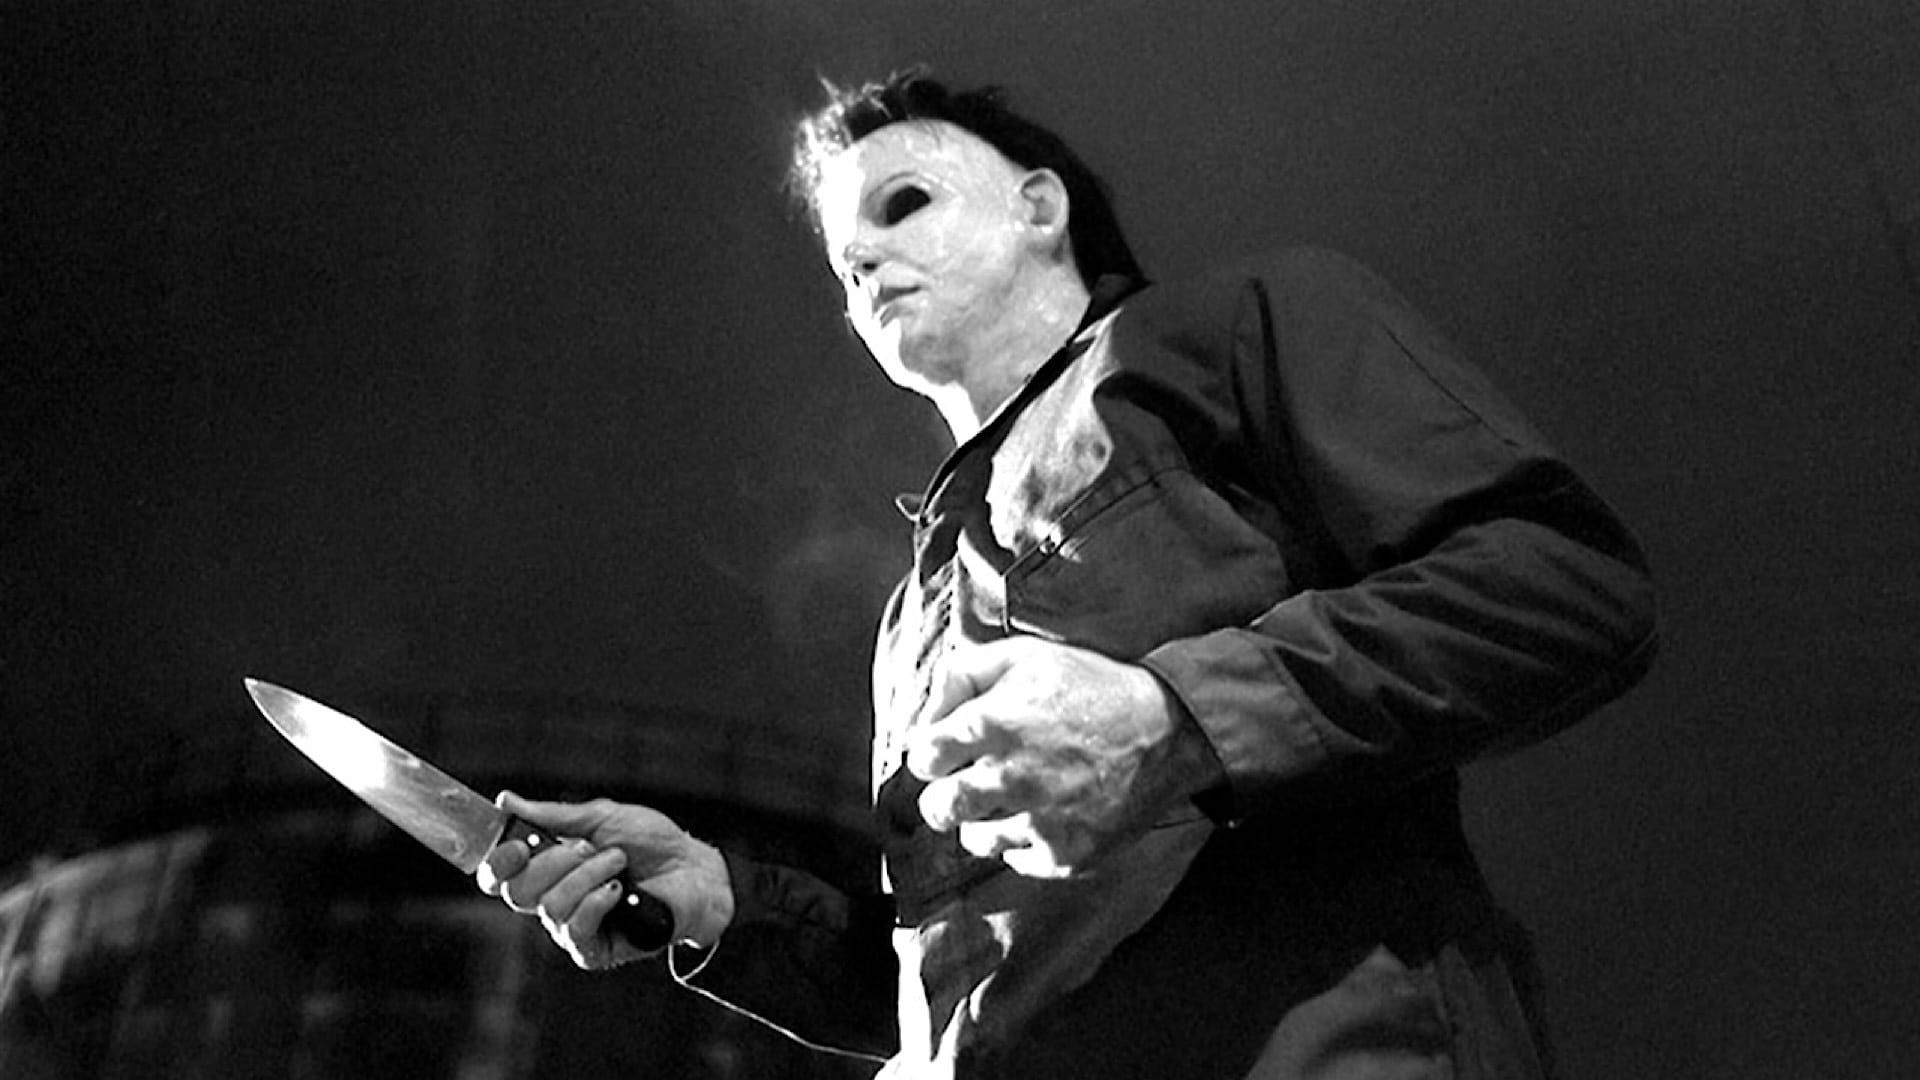 Halloween: La maldición de Michael Myers (Halloween 6) (1995)